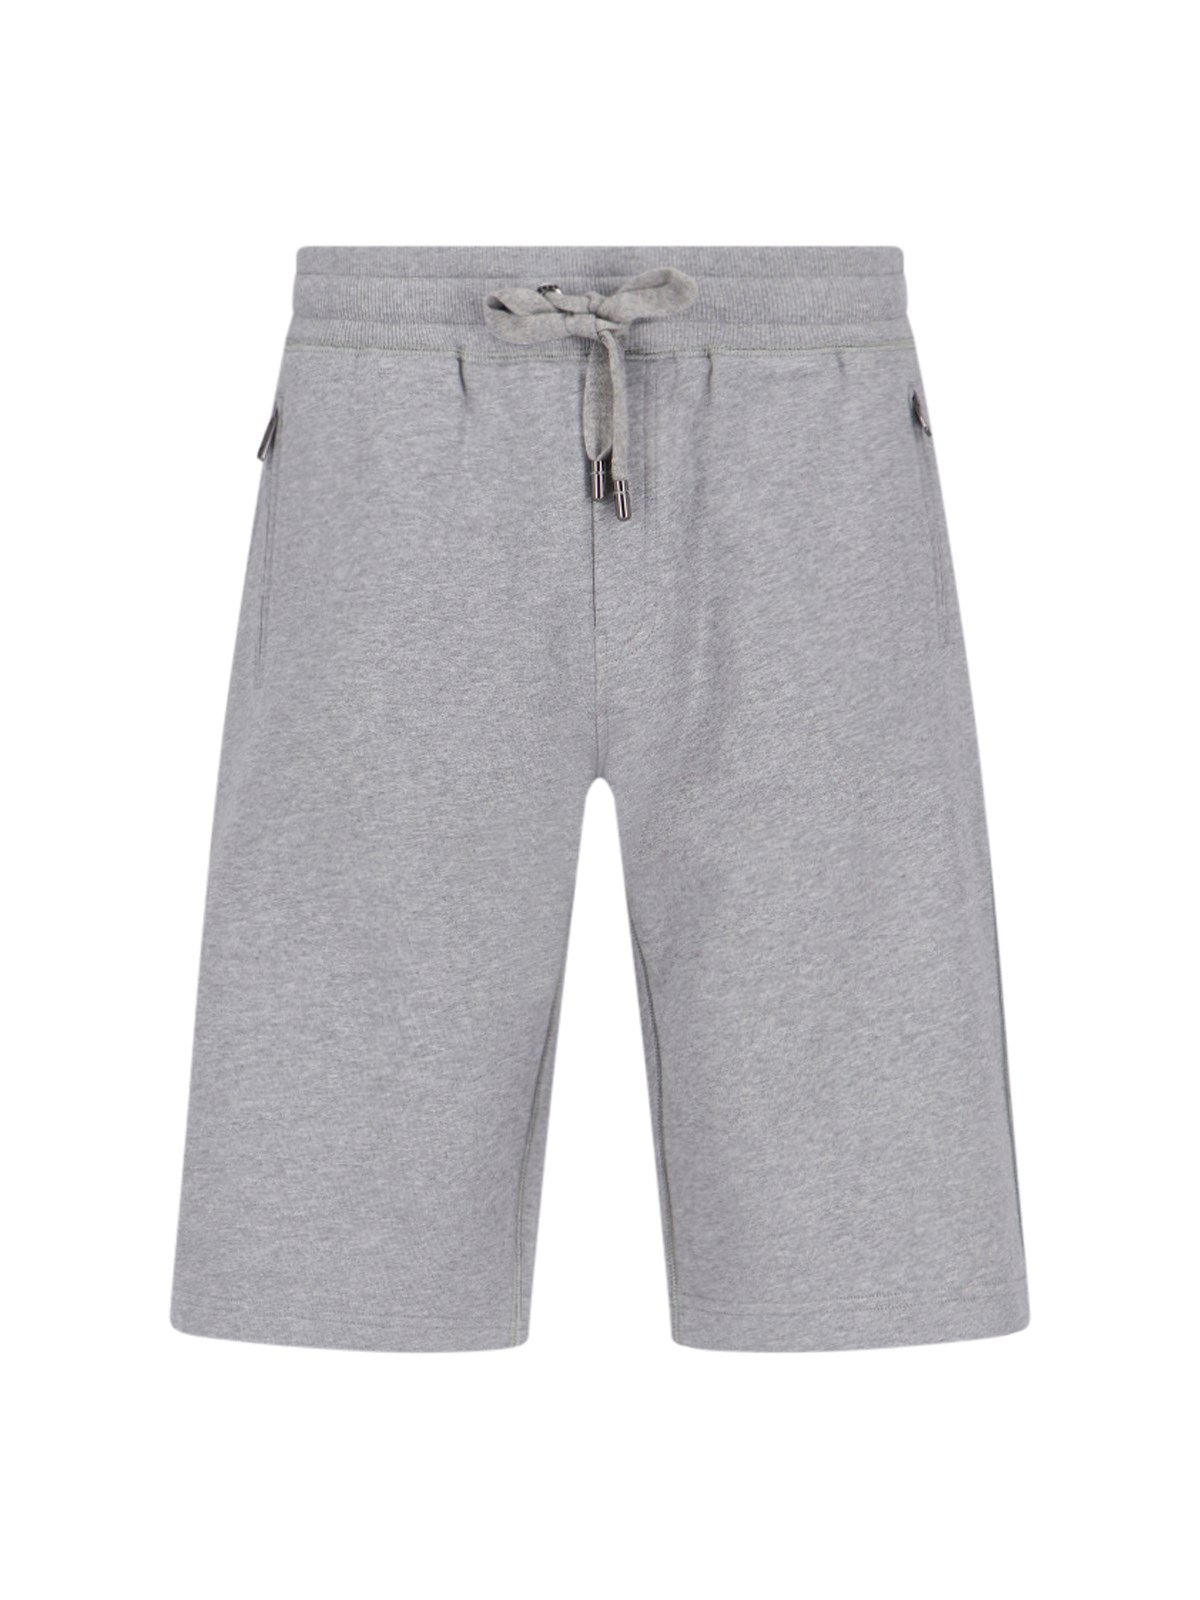 Dolce & Gabbana Sports Shorts In Gray